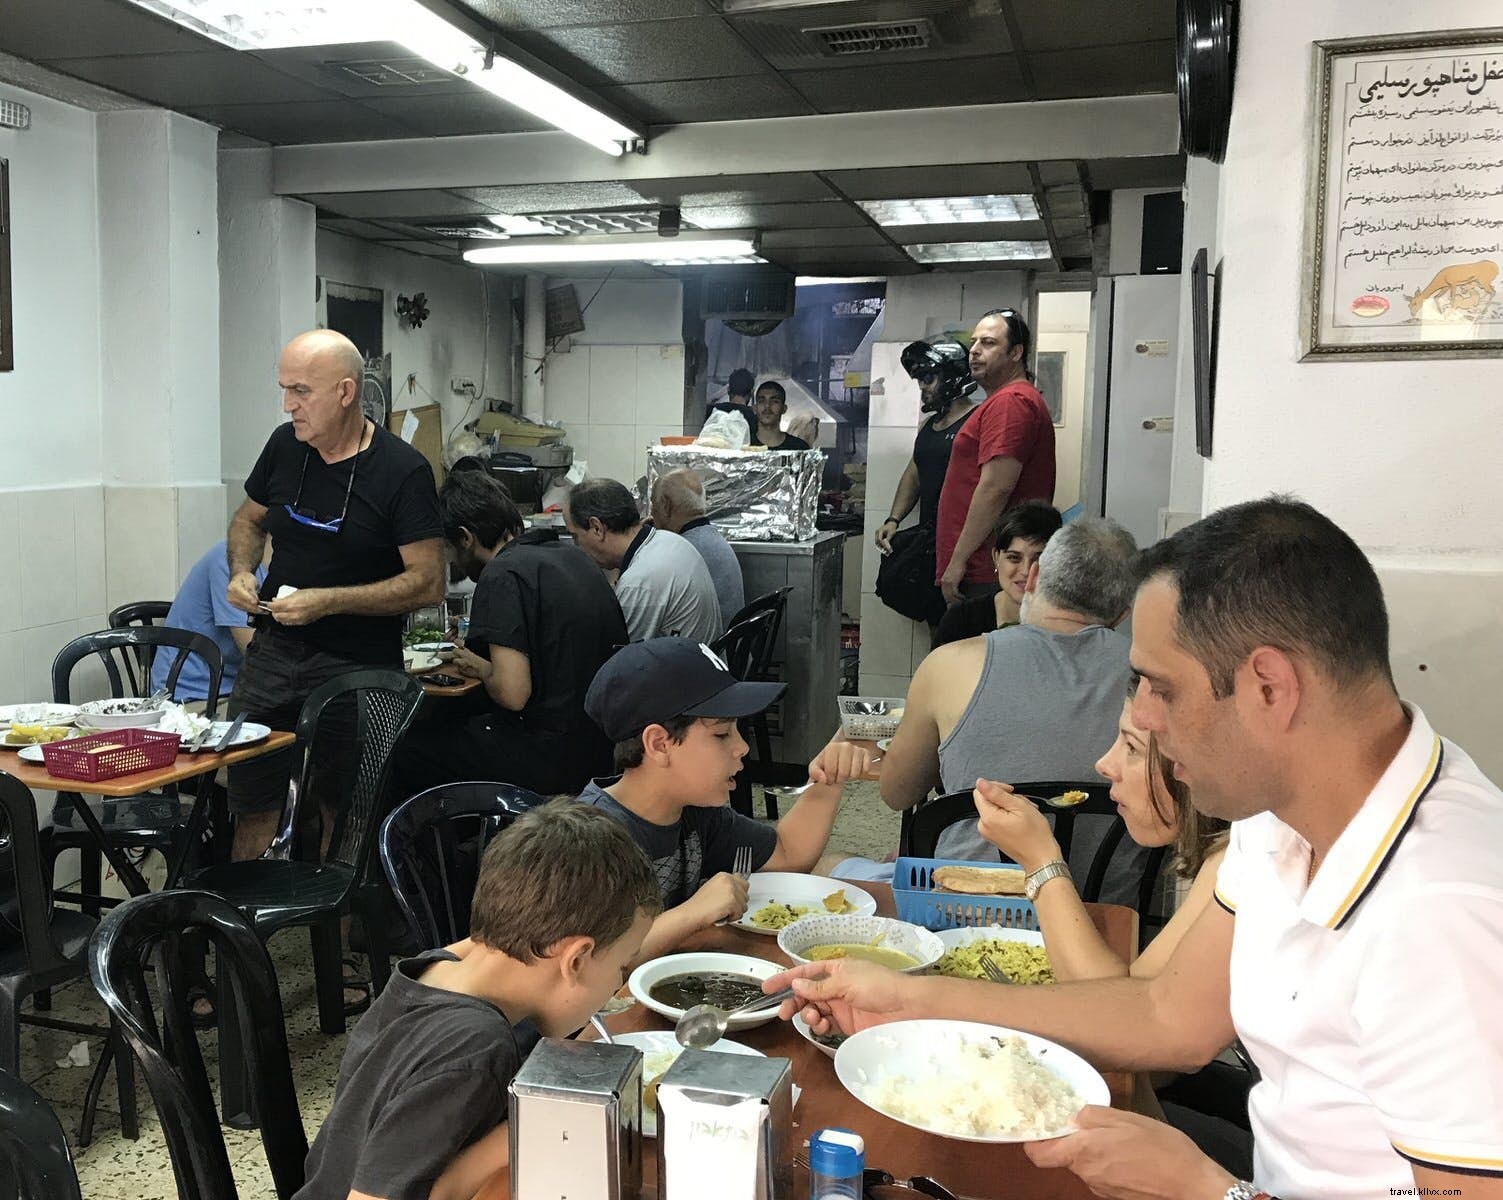 Mercado à mesa:pontos de visita obrigatória dentro e ao redor dos mercados de Tel Aviv 